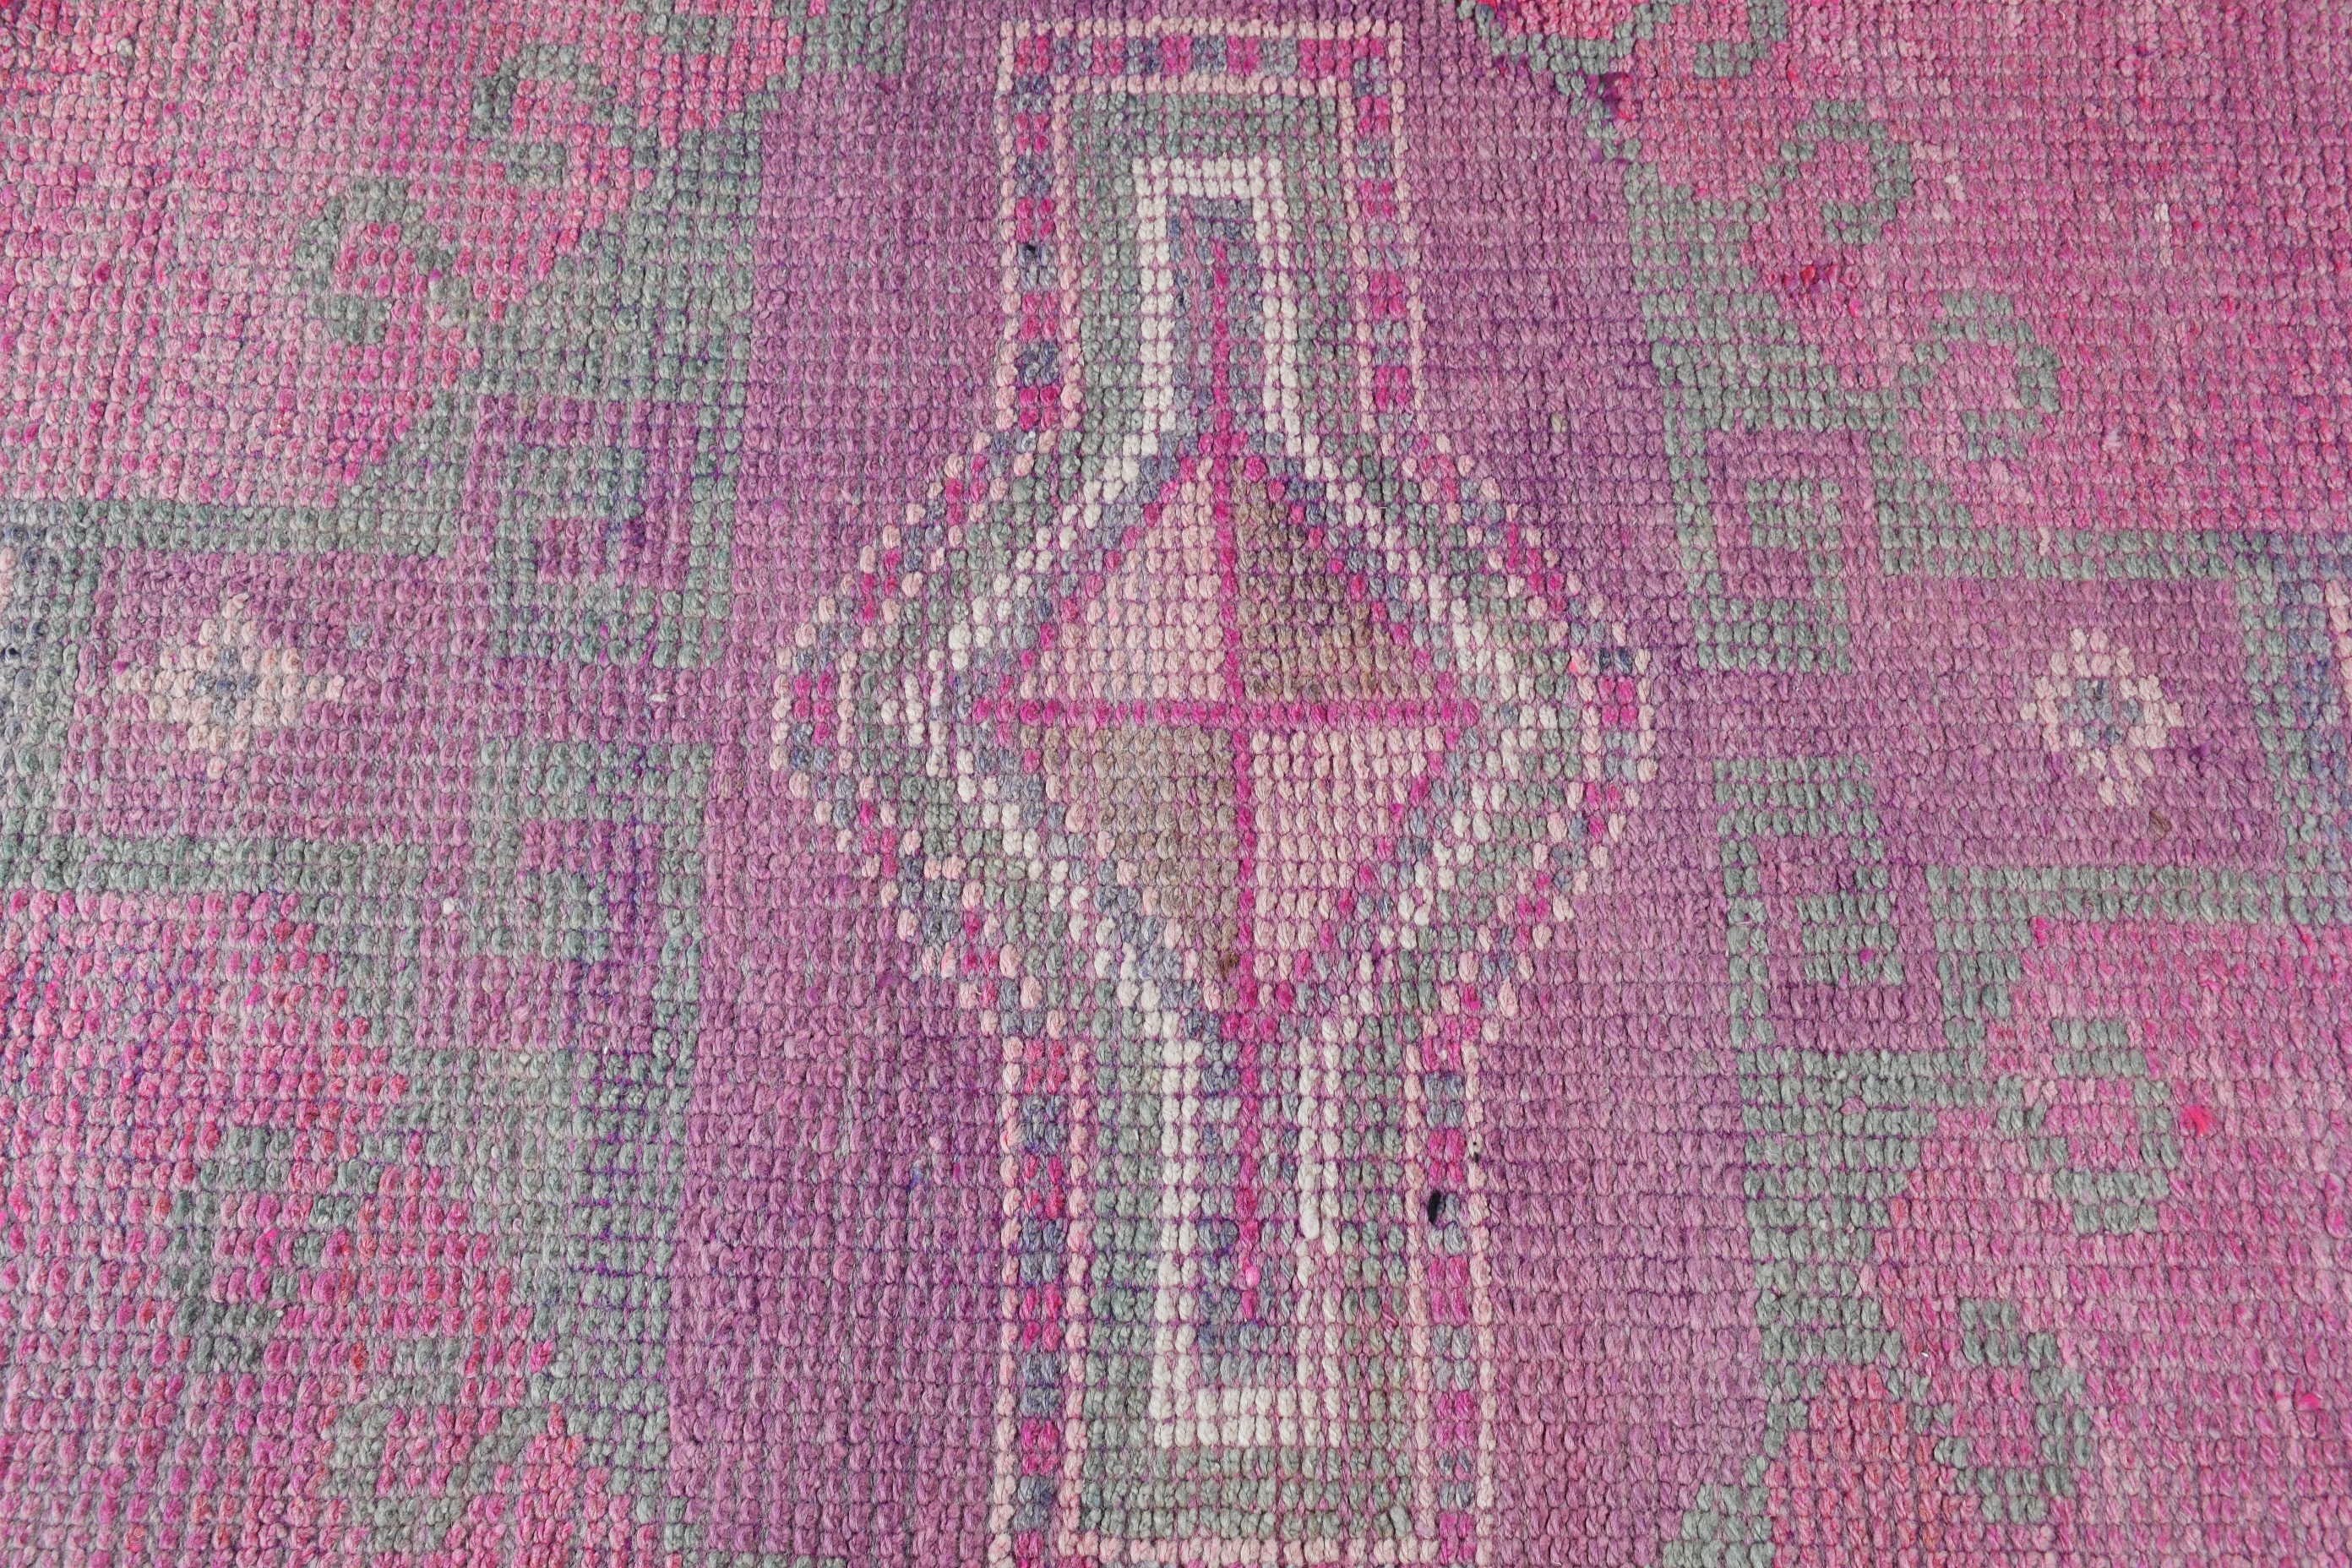 Oriental Rugs, Rugs for Corridor, Oushak Rug, Vintage Rug, Stair Rugs, Turkish Rugs, Pink Oushak Rug, Kitchen Rug, 2.7x9.9 ft Runner Rugs